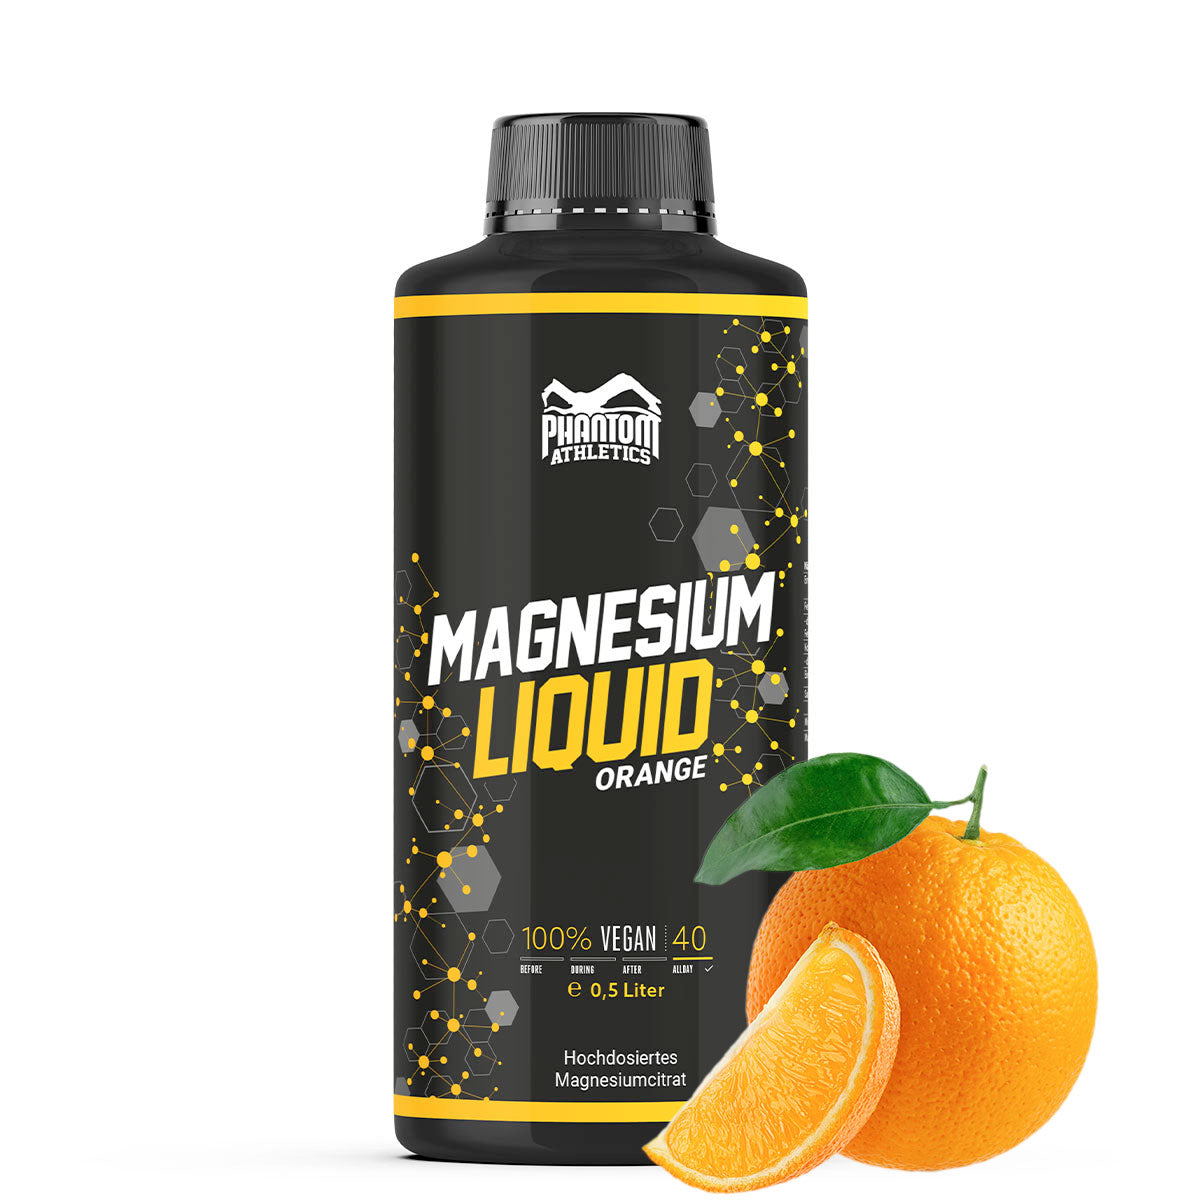 Phantom Magnesium Liquid: magnesio líquido para una mejor regeneración en las artes marciales.